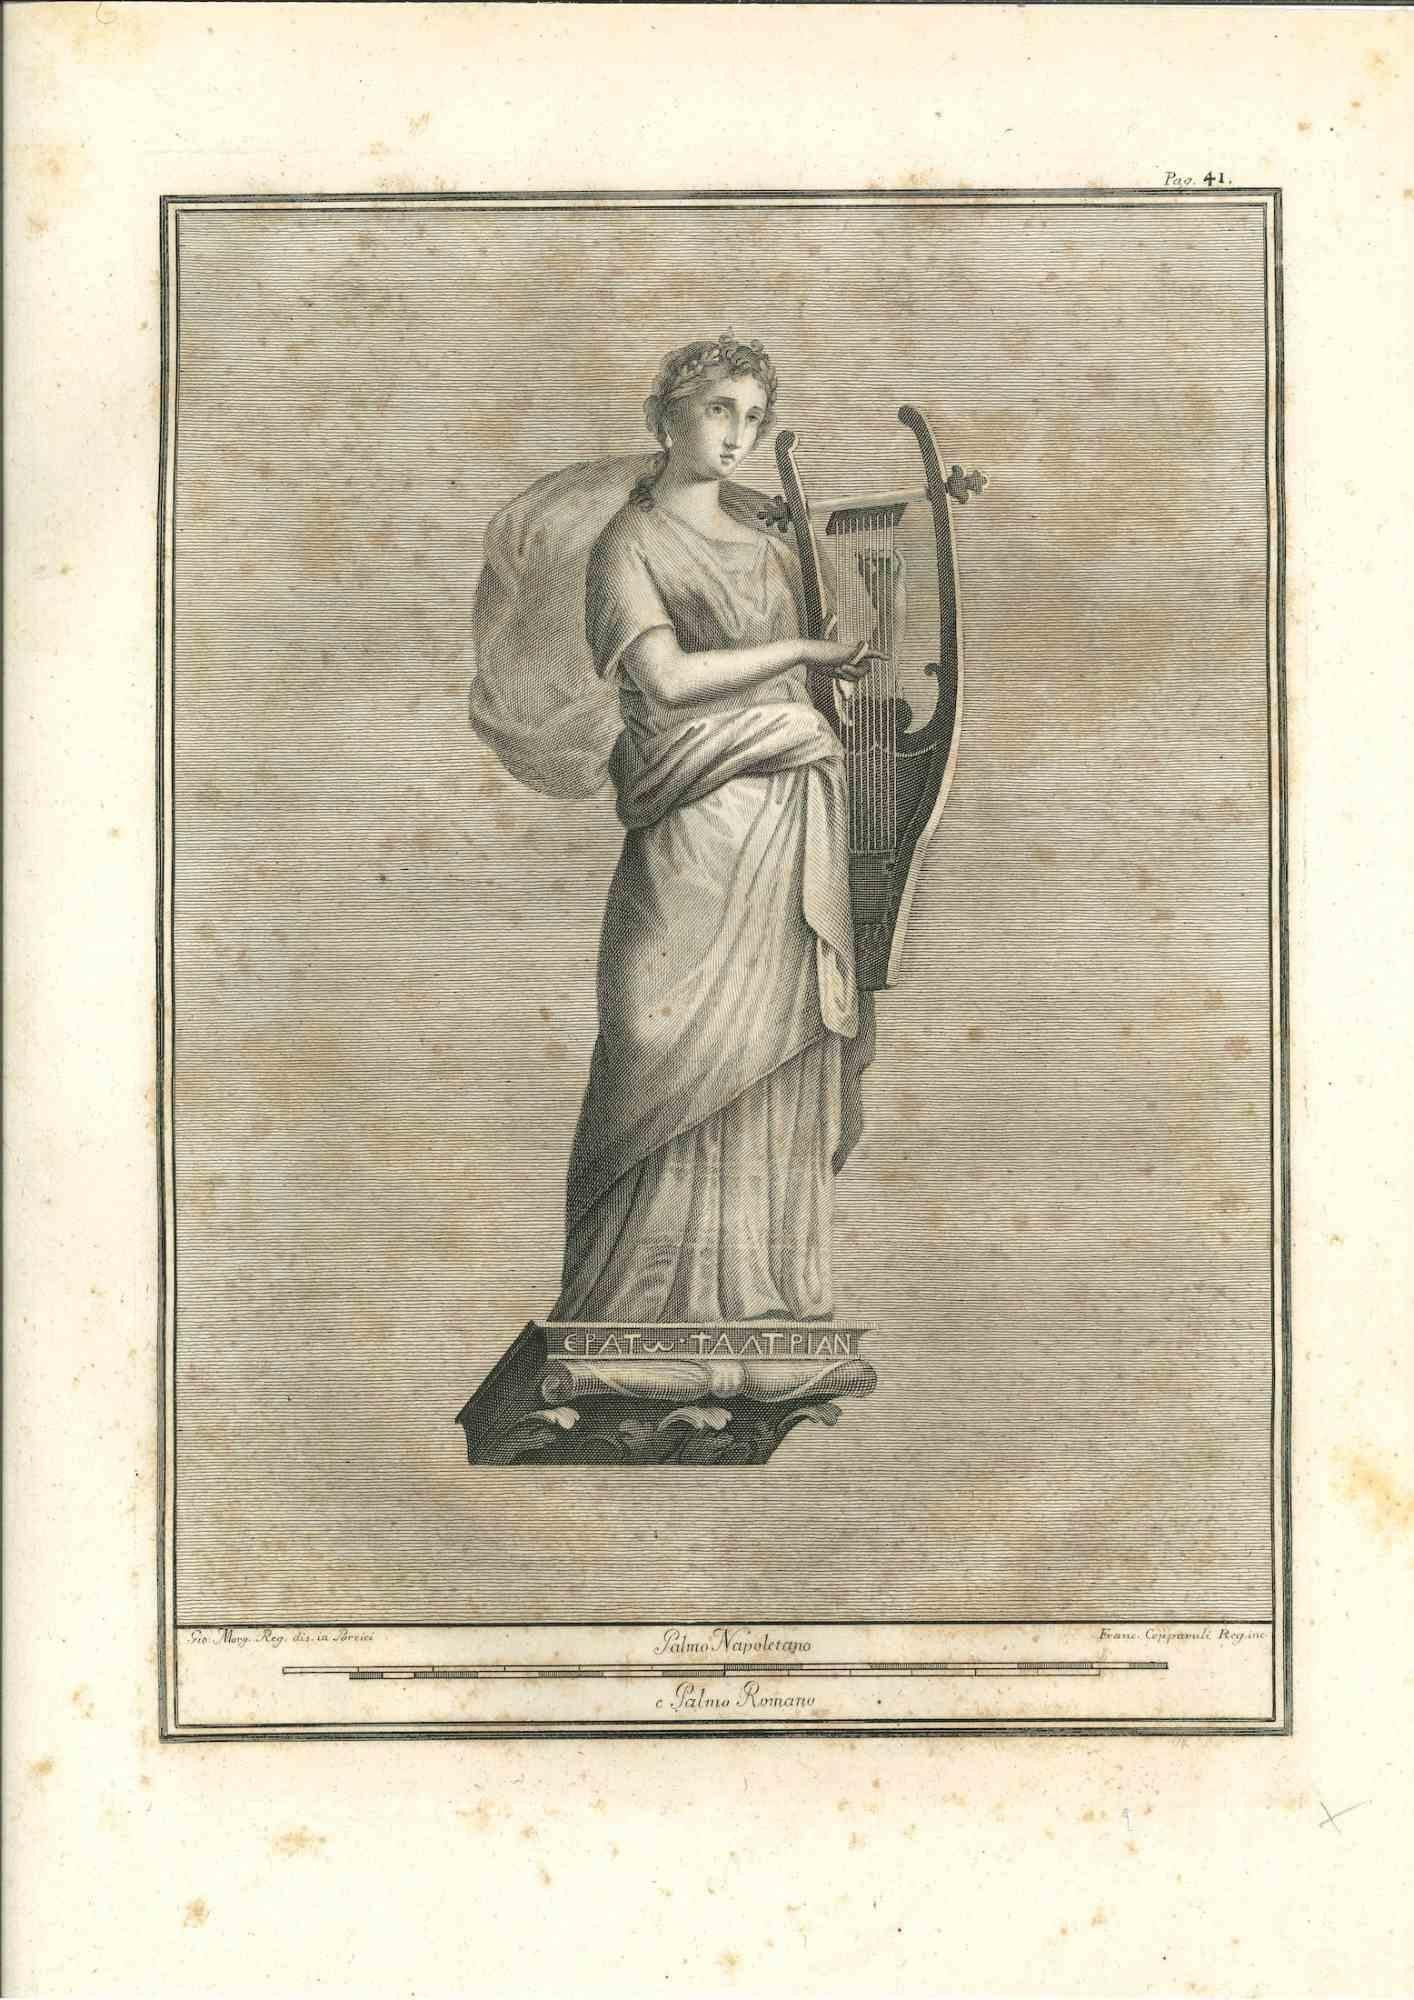 Statue romaine antique, de la série "Antiquités d'Herculanum", est une gravure originale sur papier réalisée par Francesco Cepparuli au 18ème siècle.

Signé sur la plaque en bas à droite

Bon état mais vieilli.

La gravure appartient à la suite